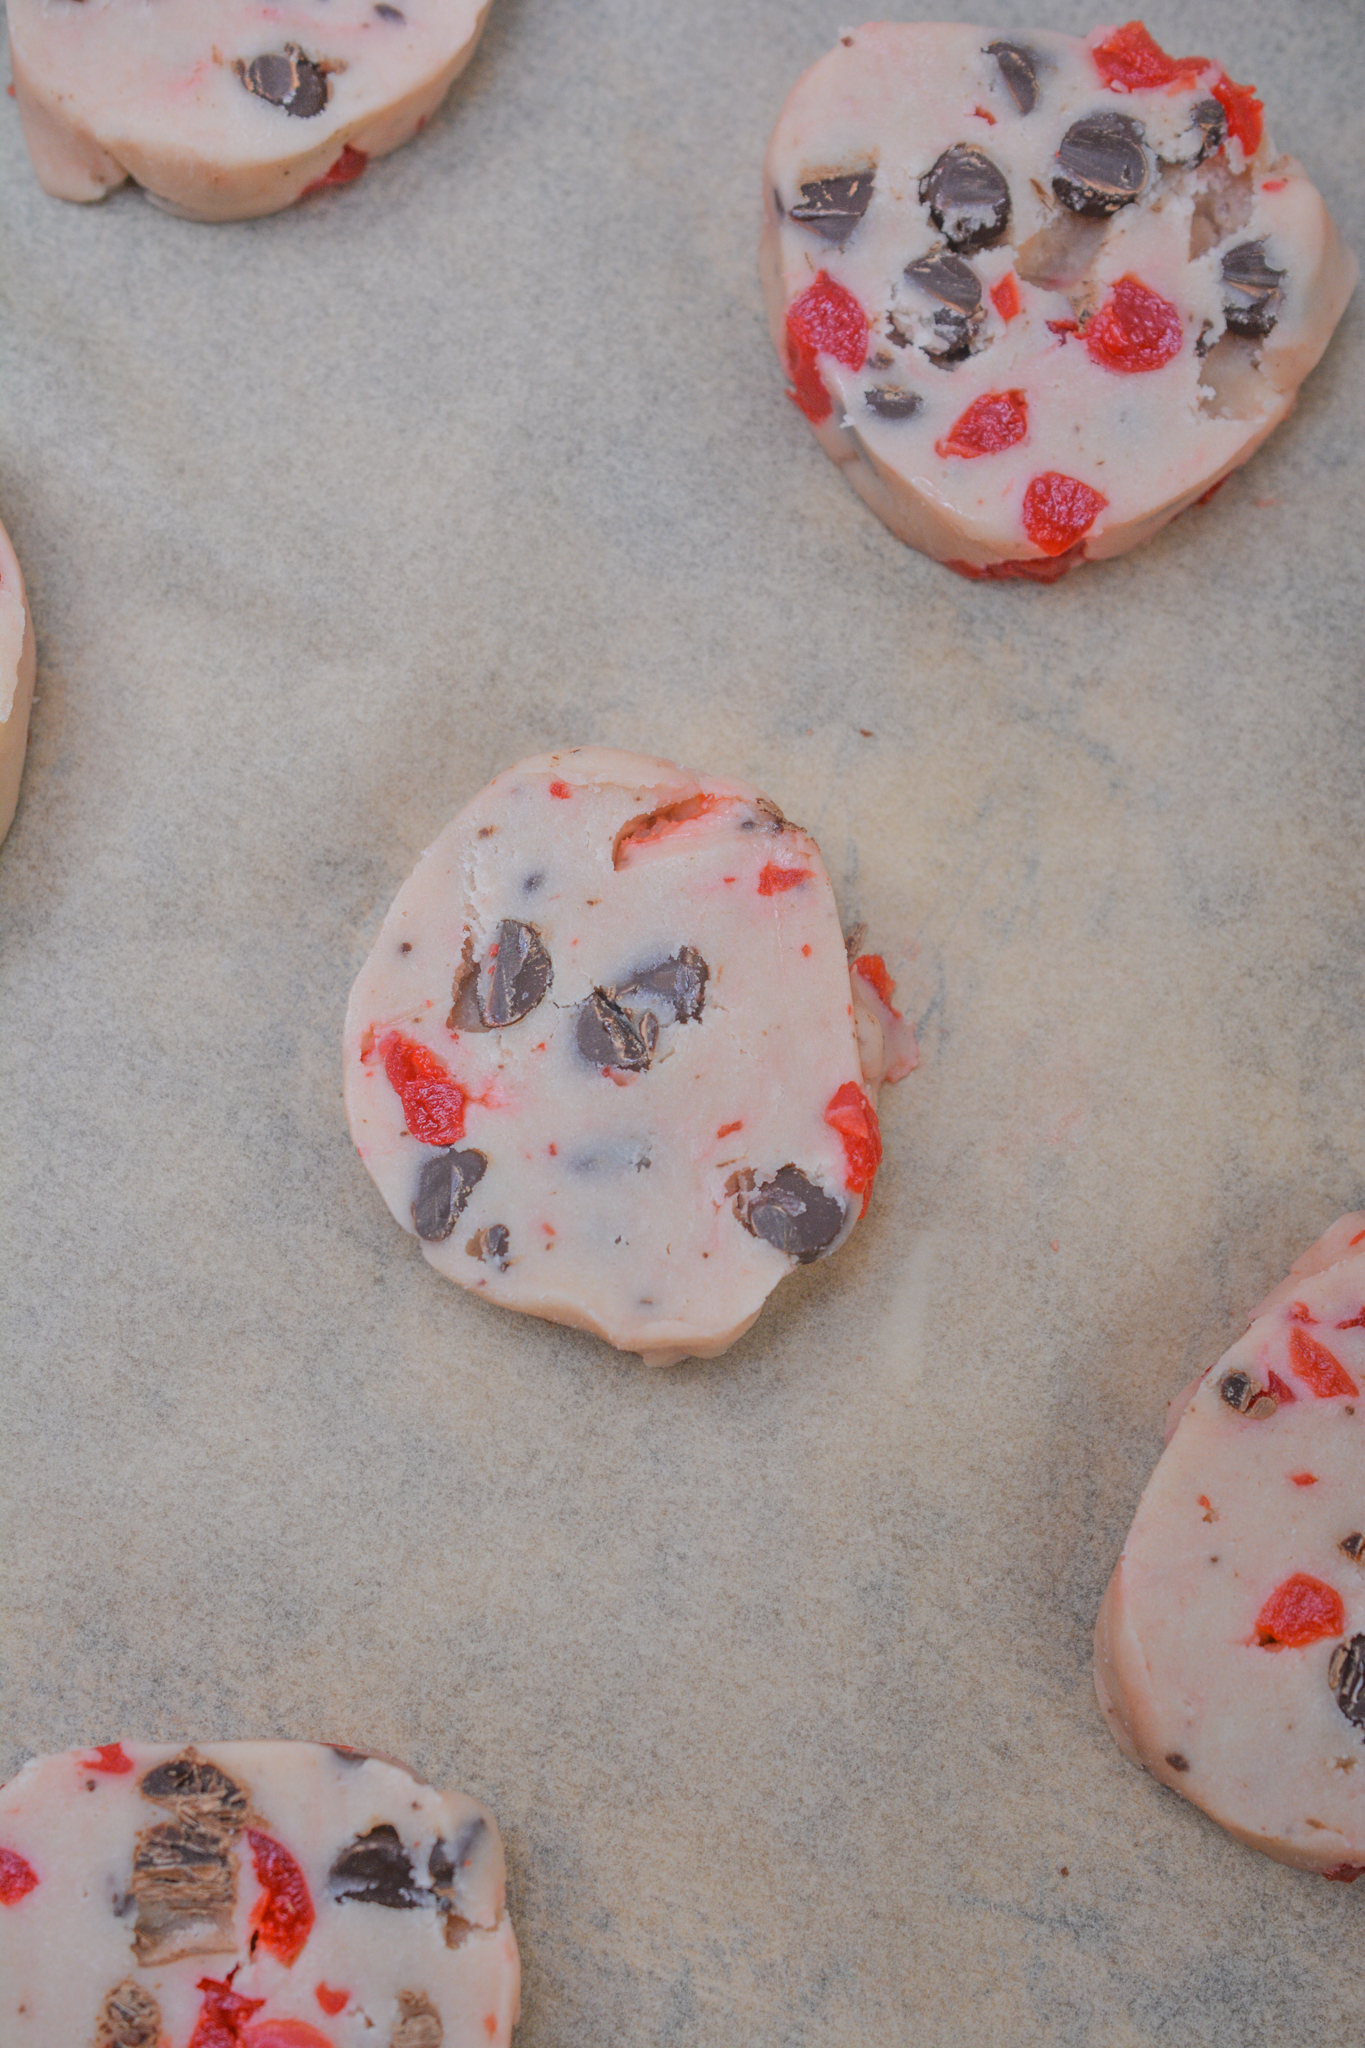 Maraschino Cherry Shortbread Cookies